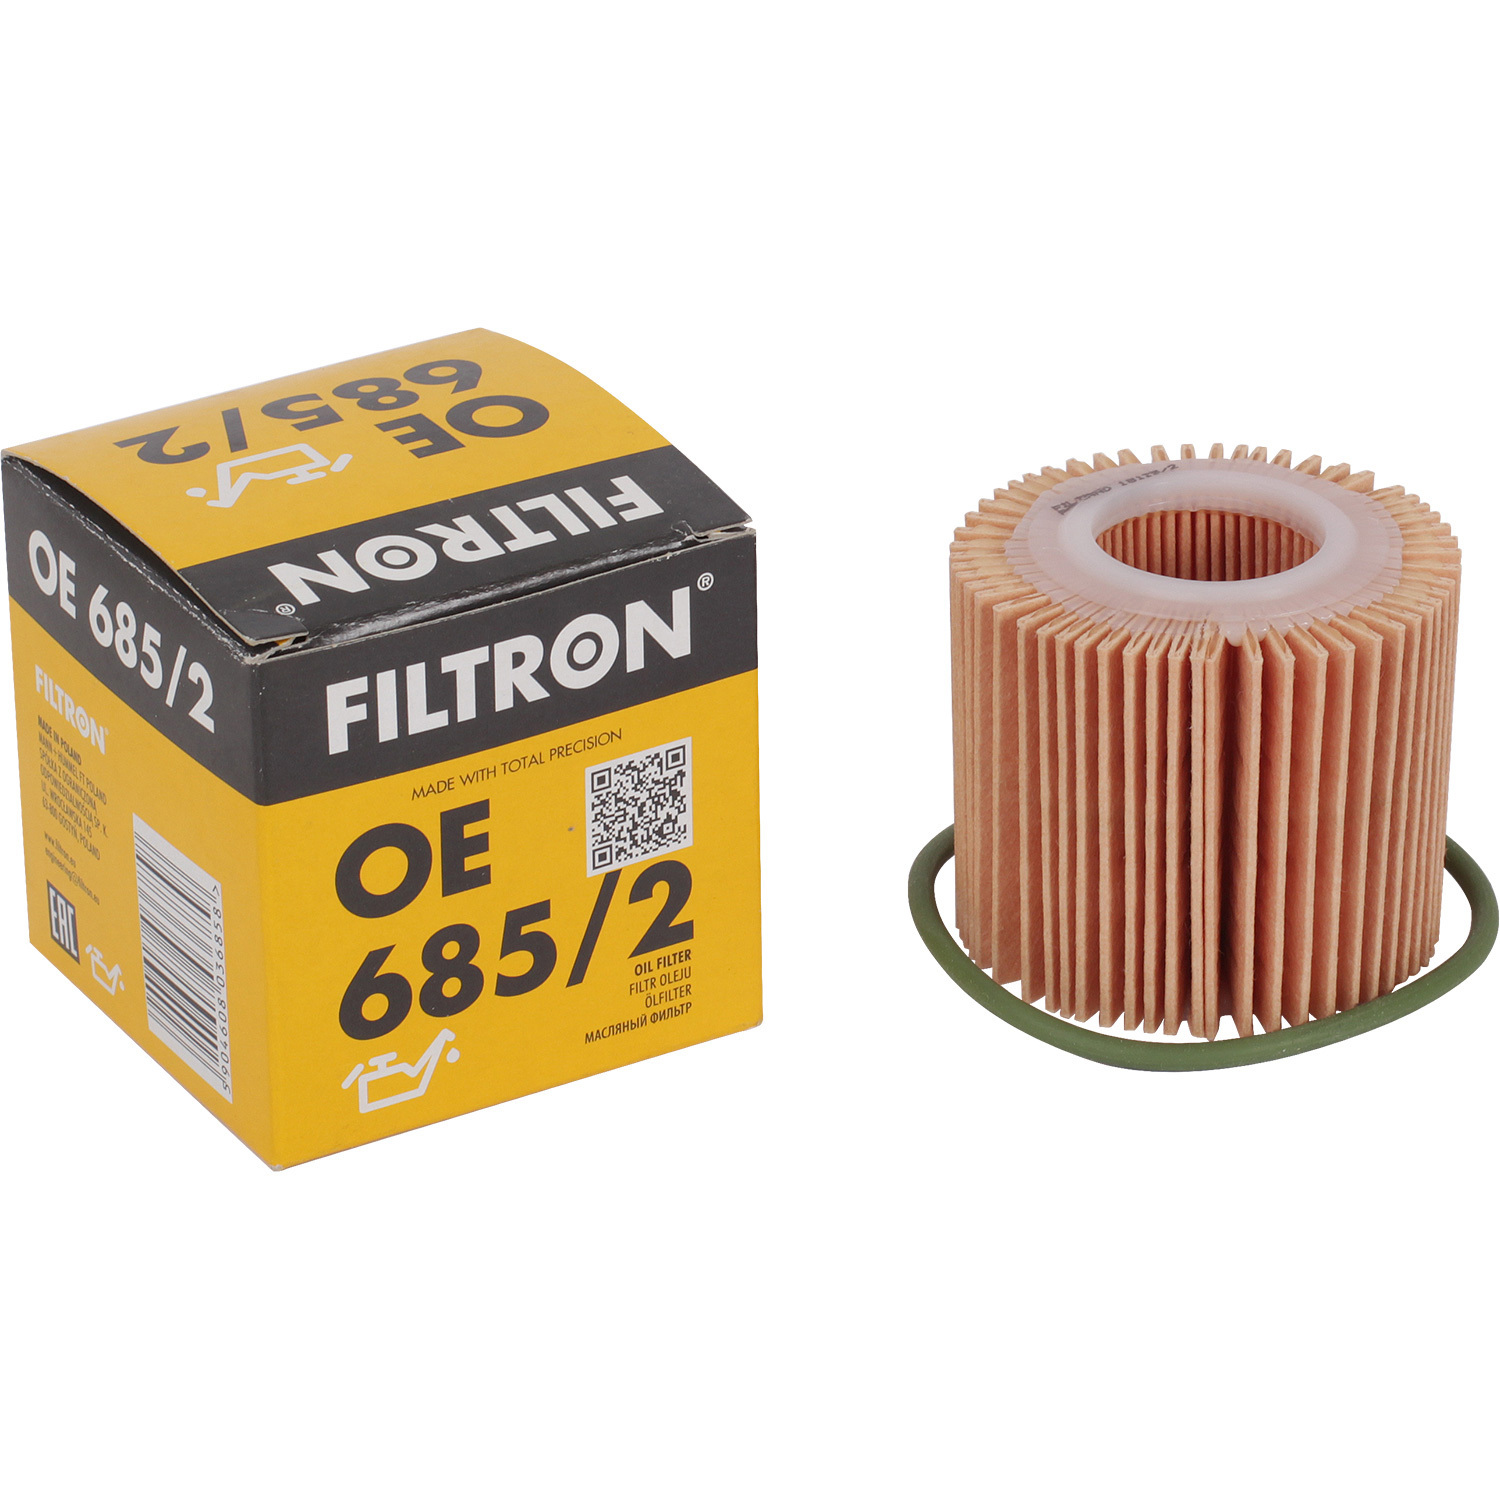 фильтры filtron фильтр масляный filtron oe673 Фильтры Filtron Фильтр масляный Filtron OE6852